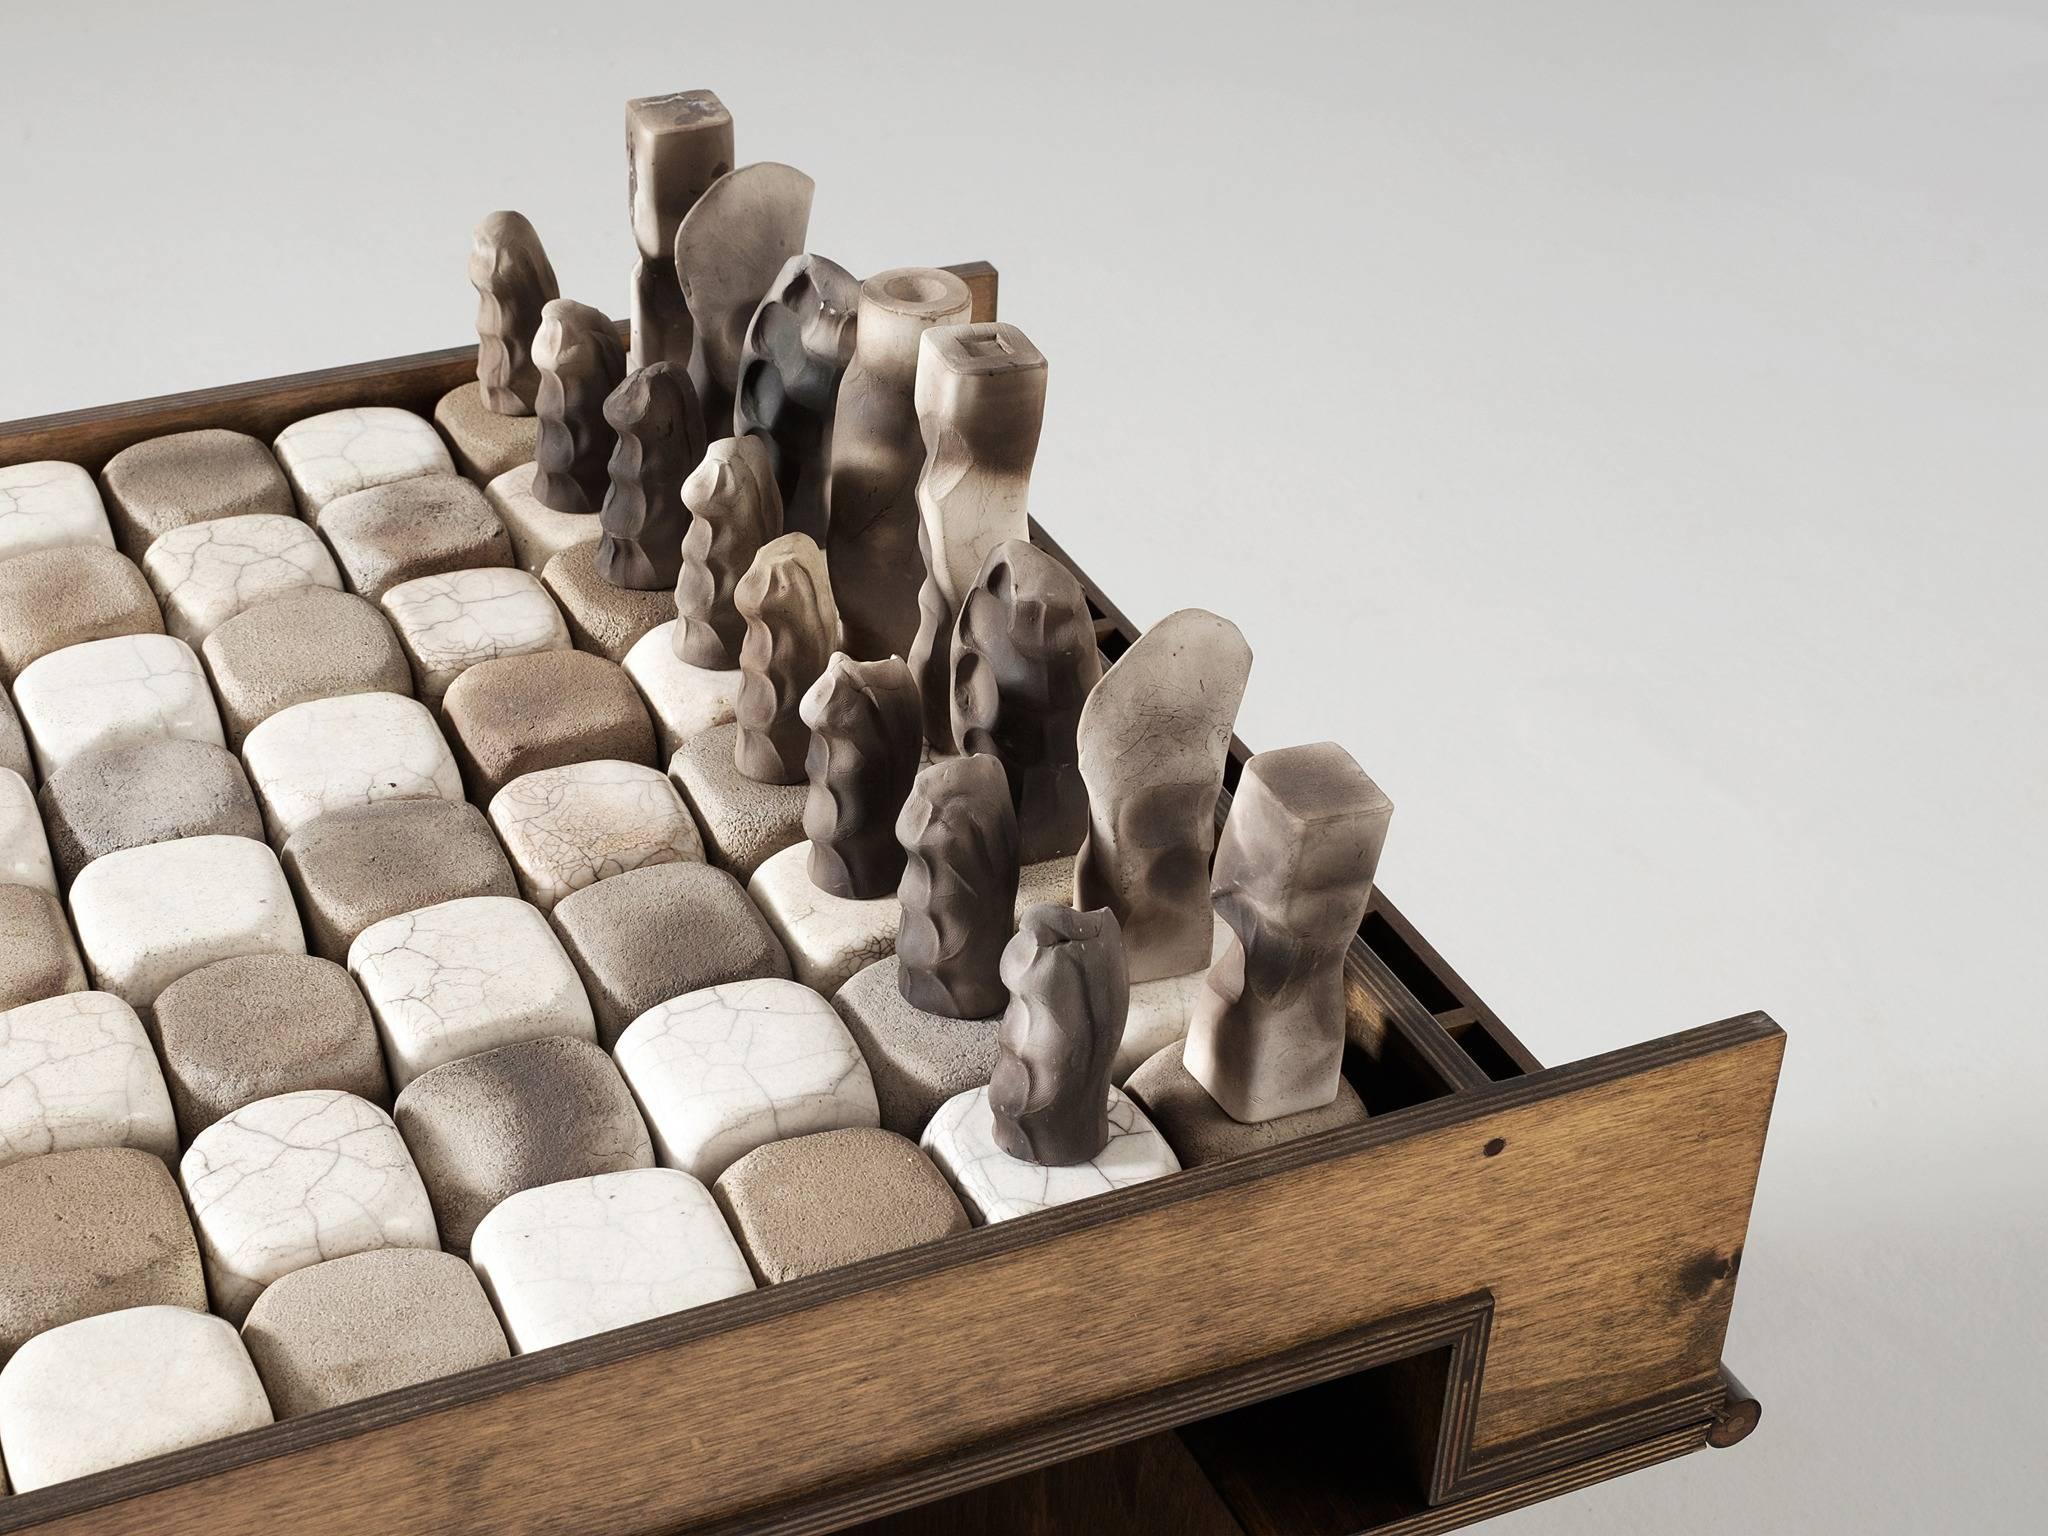 ceramic chess pieces